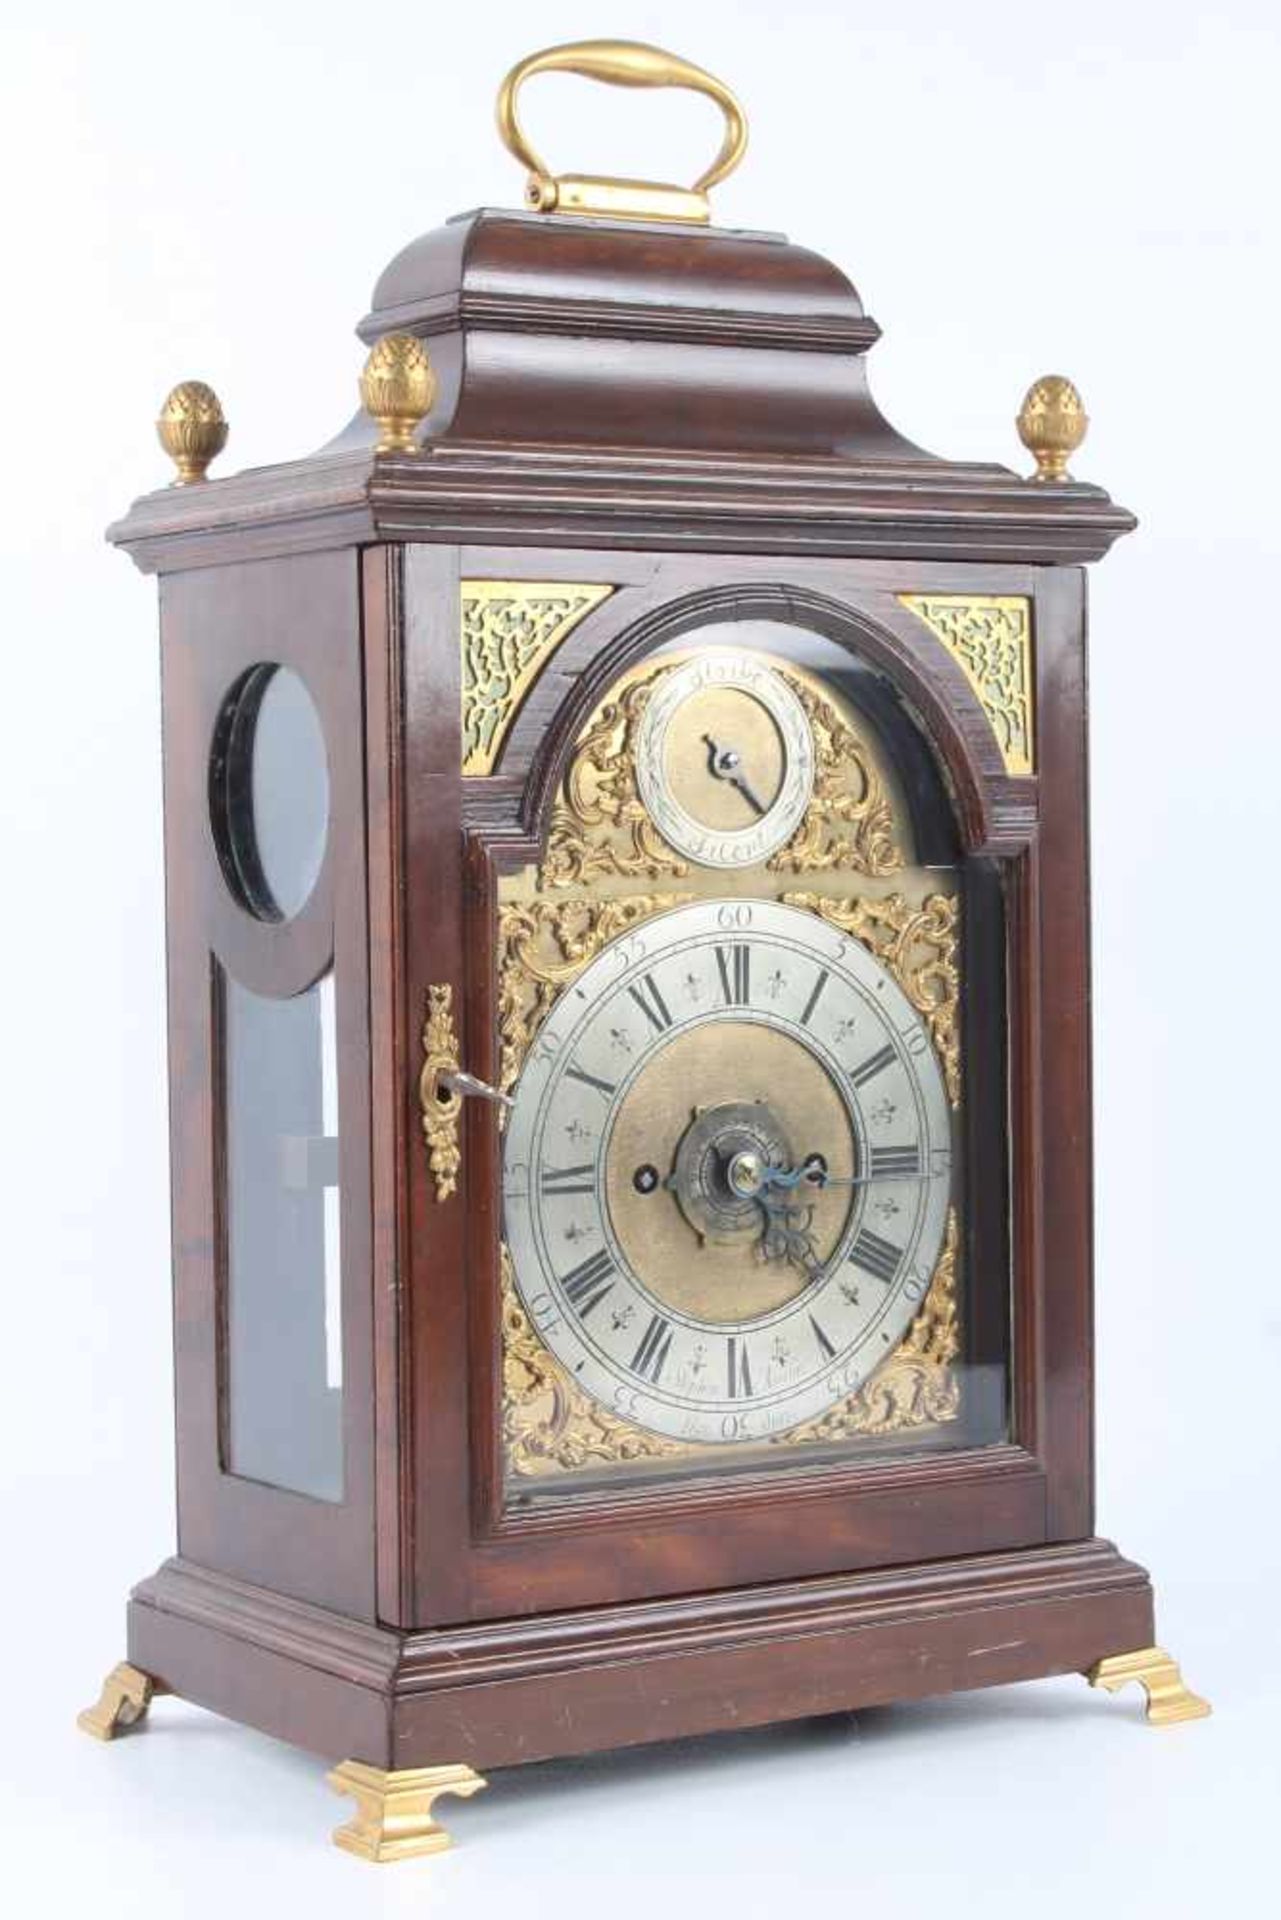 Stockuhr, London, bracket clock,Holzgehäuse m. Messingaplikken, verziertes Zifferblatt, bezeichnet - Bild 2 aus 6